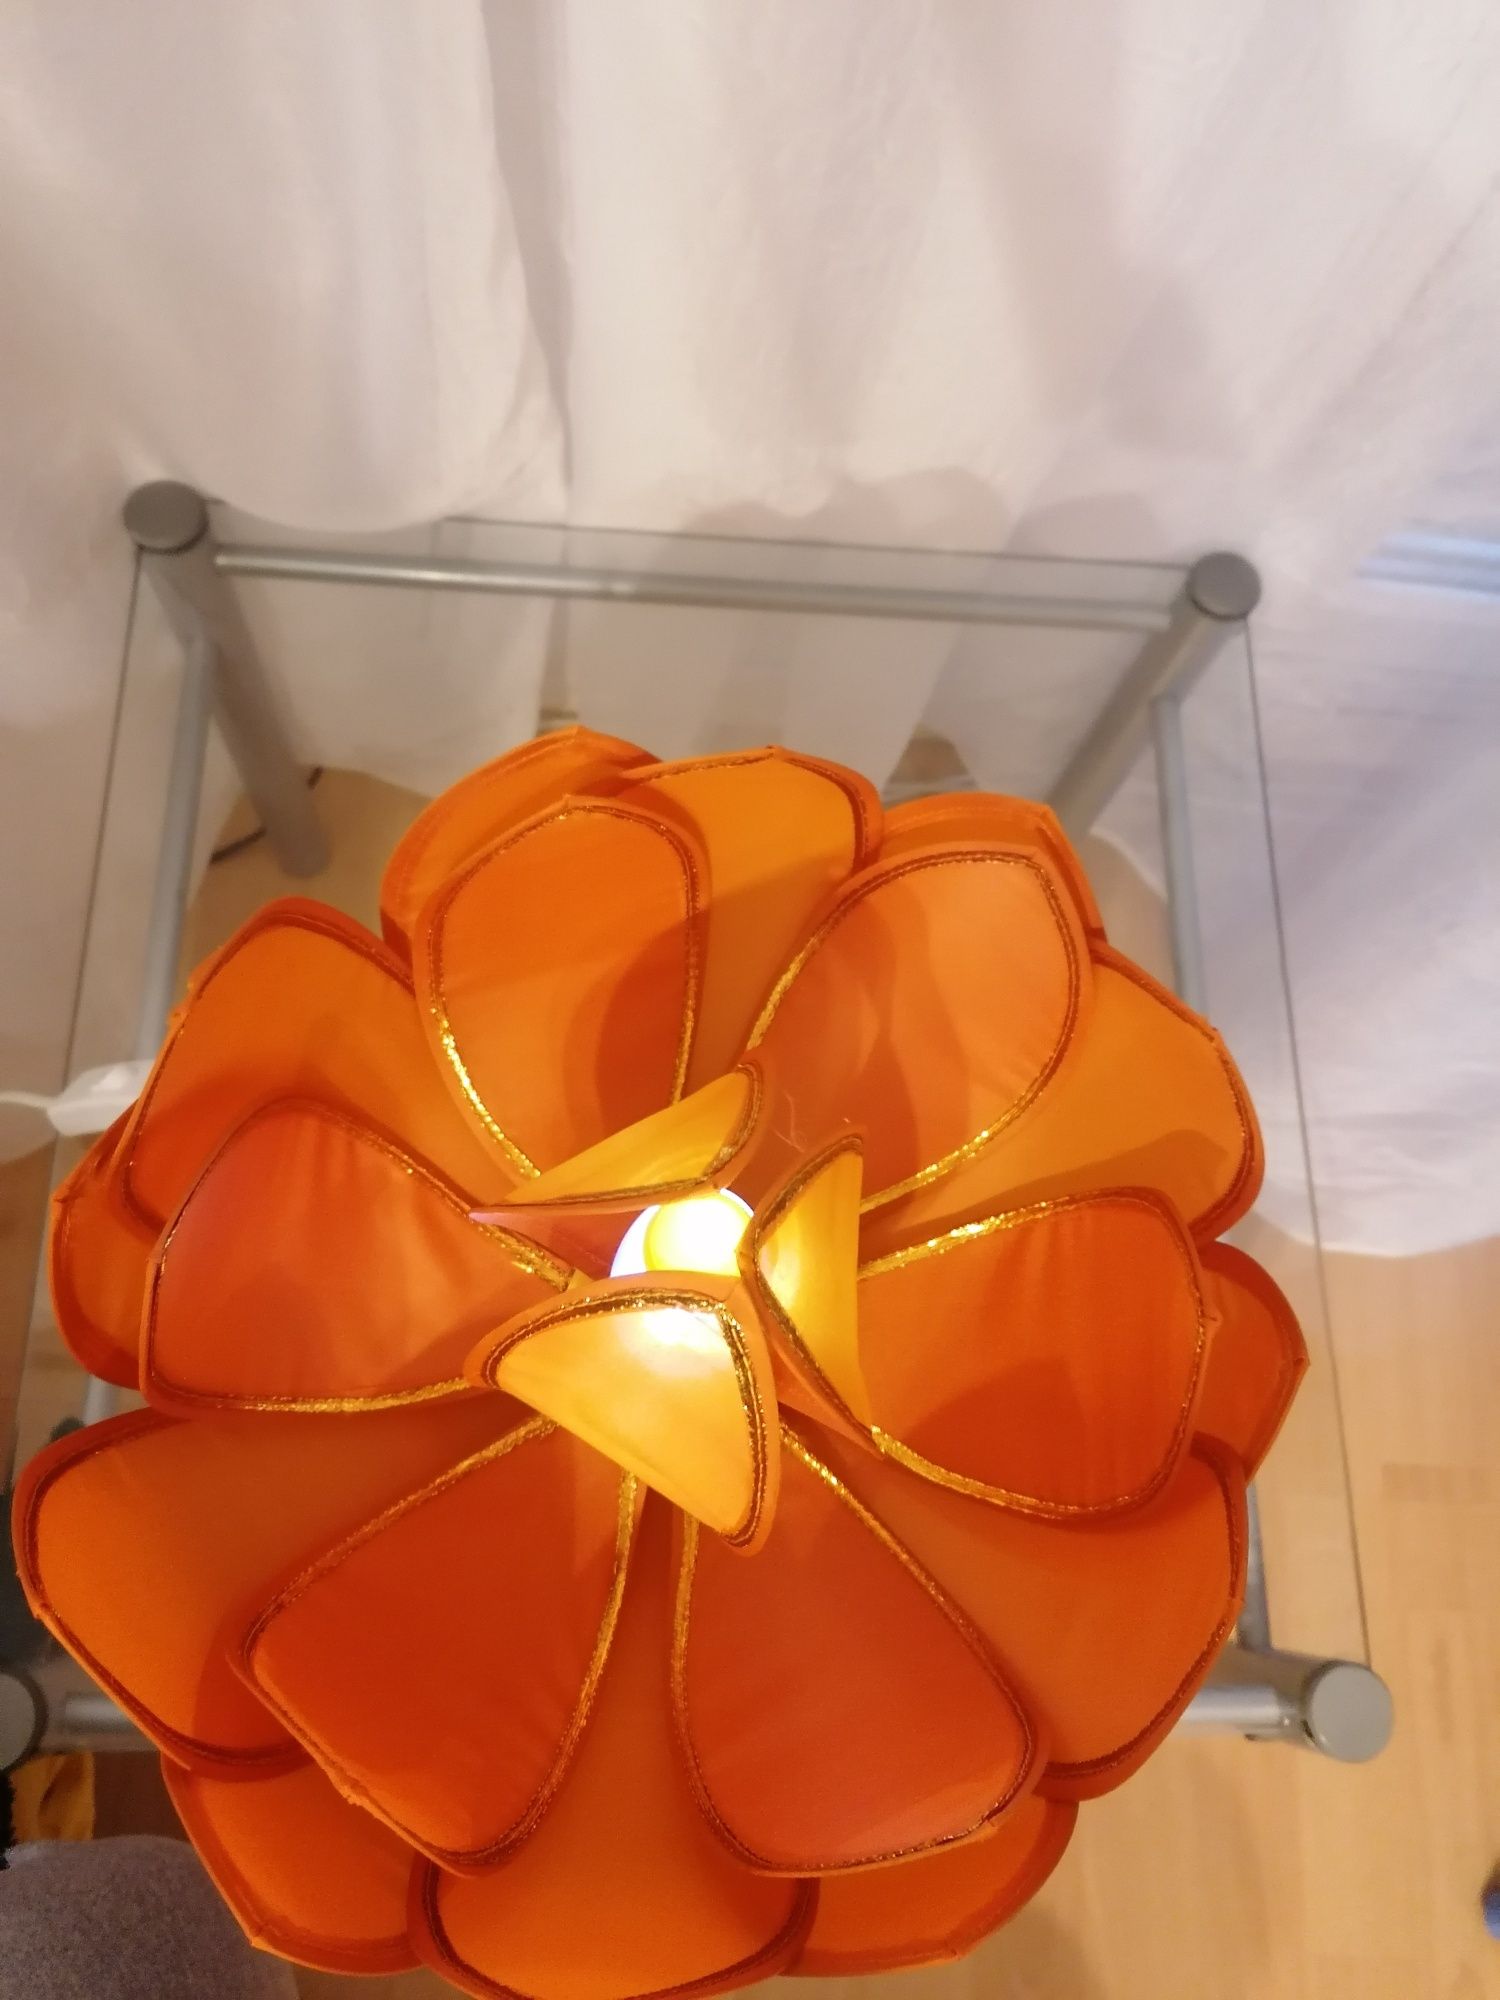 Lampka w stylu kwiatu elektryczna pomaranczowa/czerwona/różowa